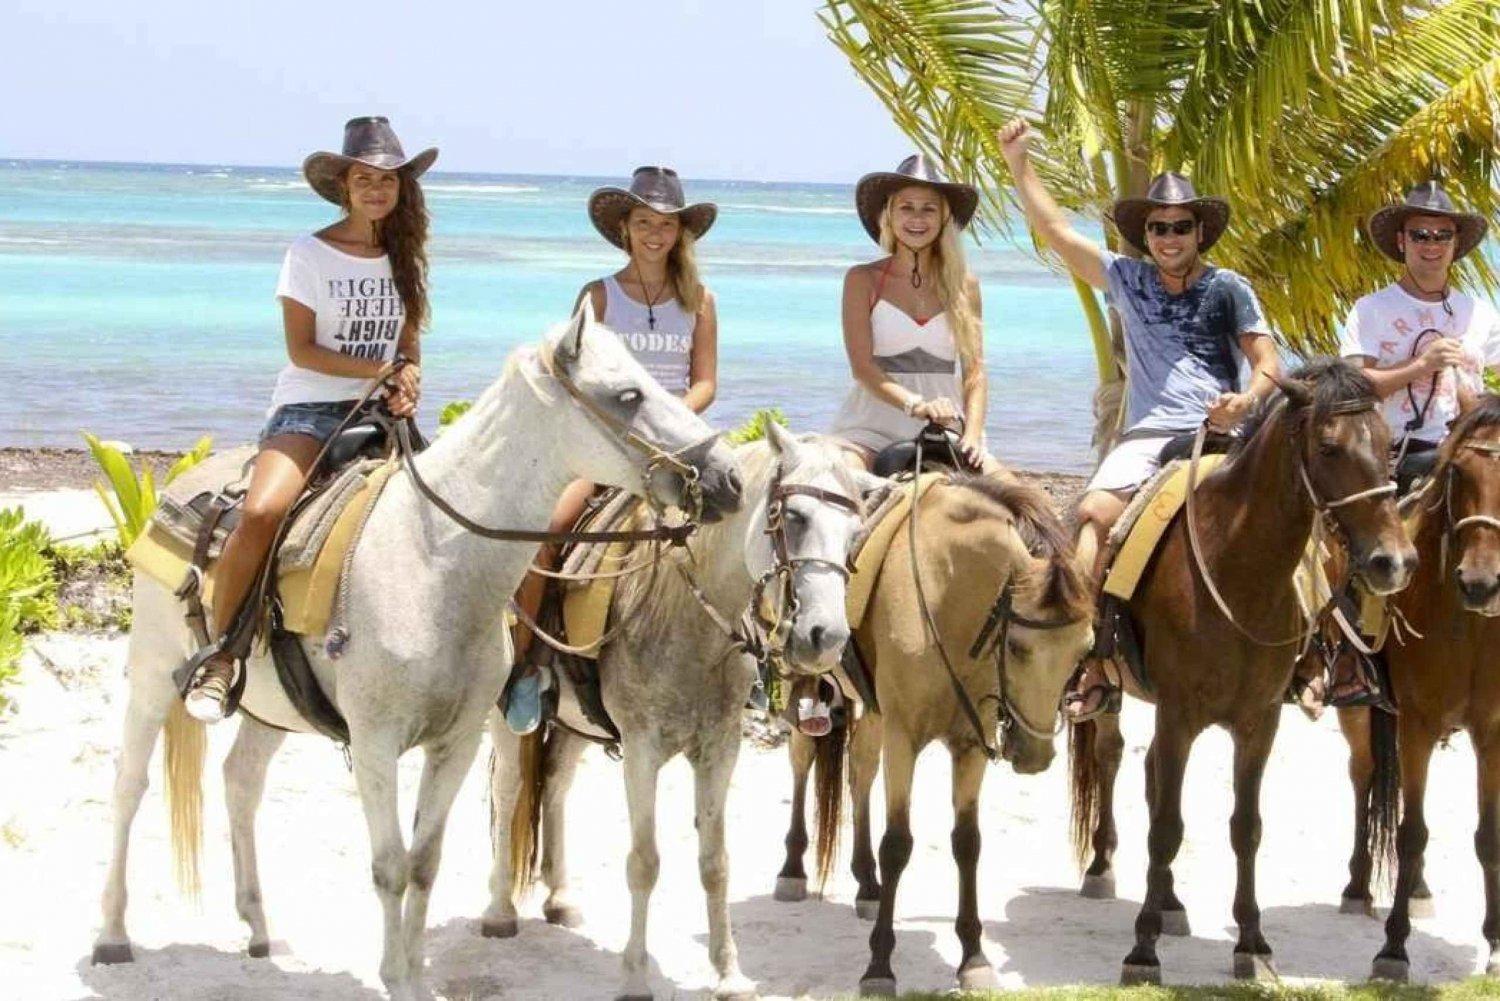 Punta Cana: Paseos a caballo por las hermosas playas